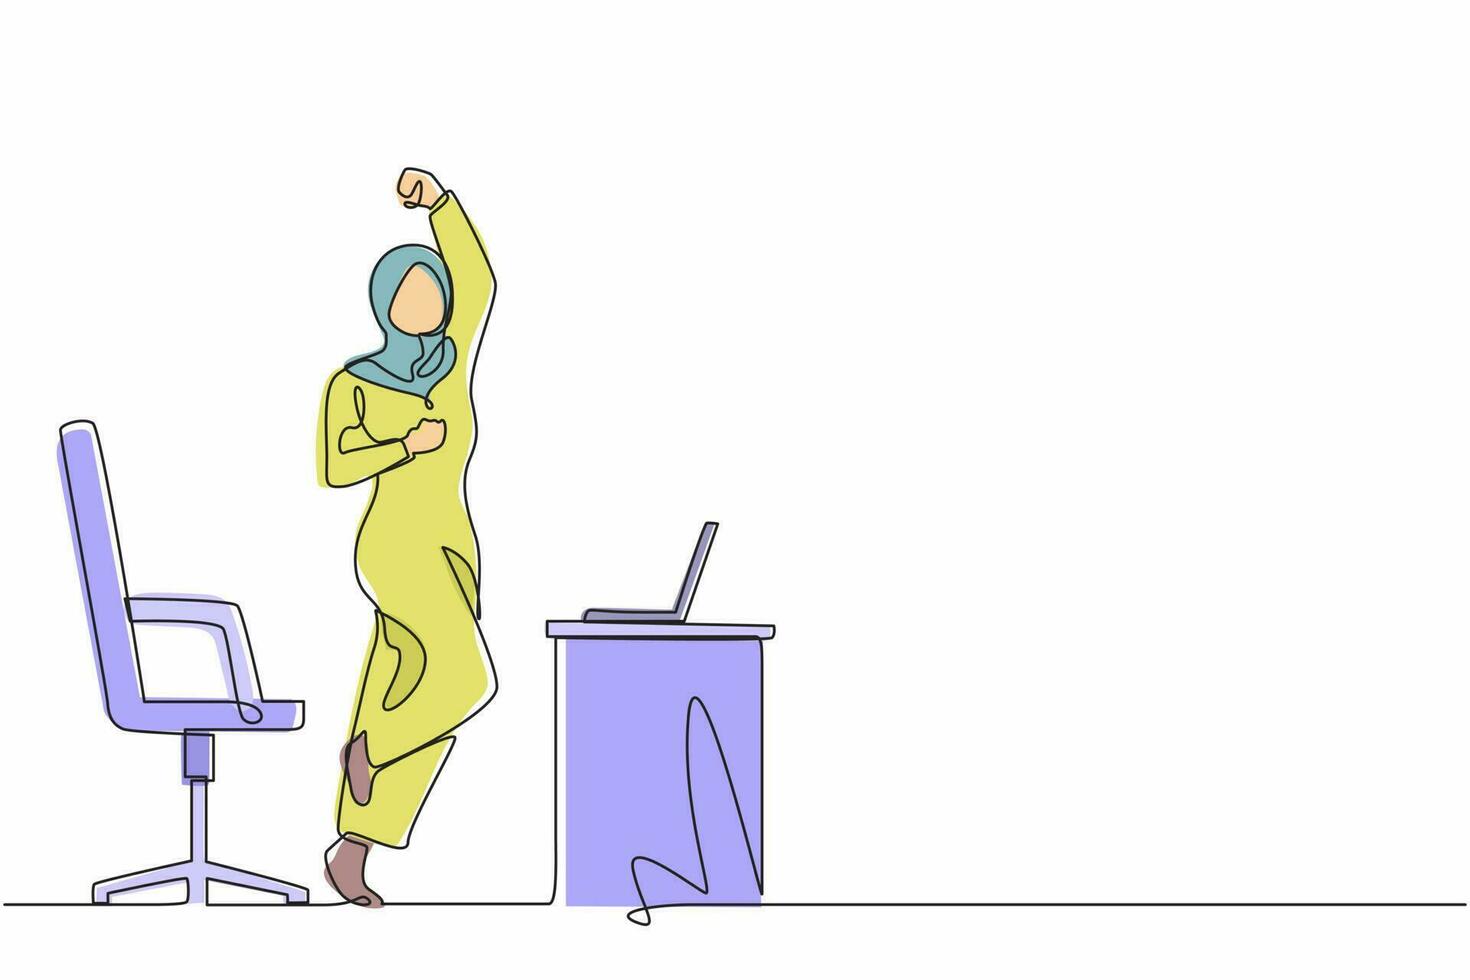 enkele lijntekening gelukkige Arabische zakenvrouw springen en dansen op haar werkplek. vrouwelijke manager viert het succes van het verhogen van de verkoop van bedrijfsproducten. doorlopende lijn ontwerp grafische vector